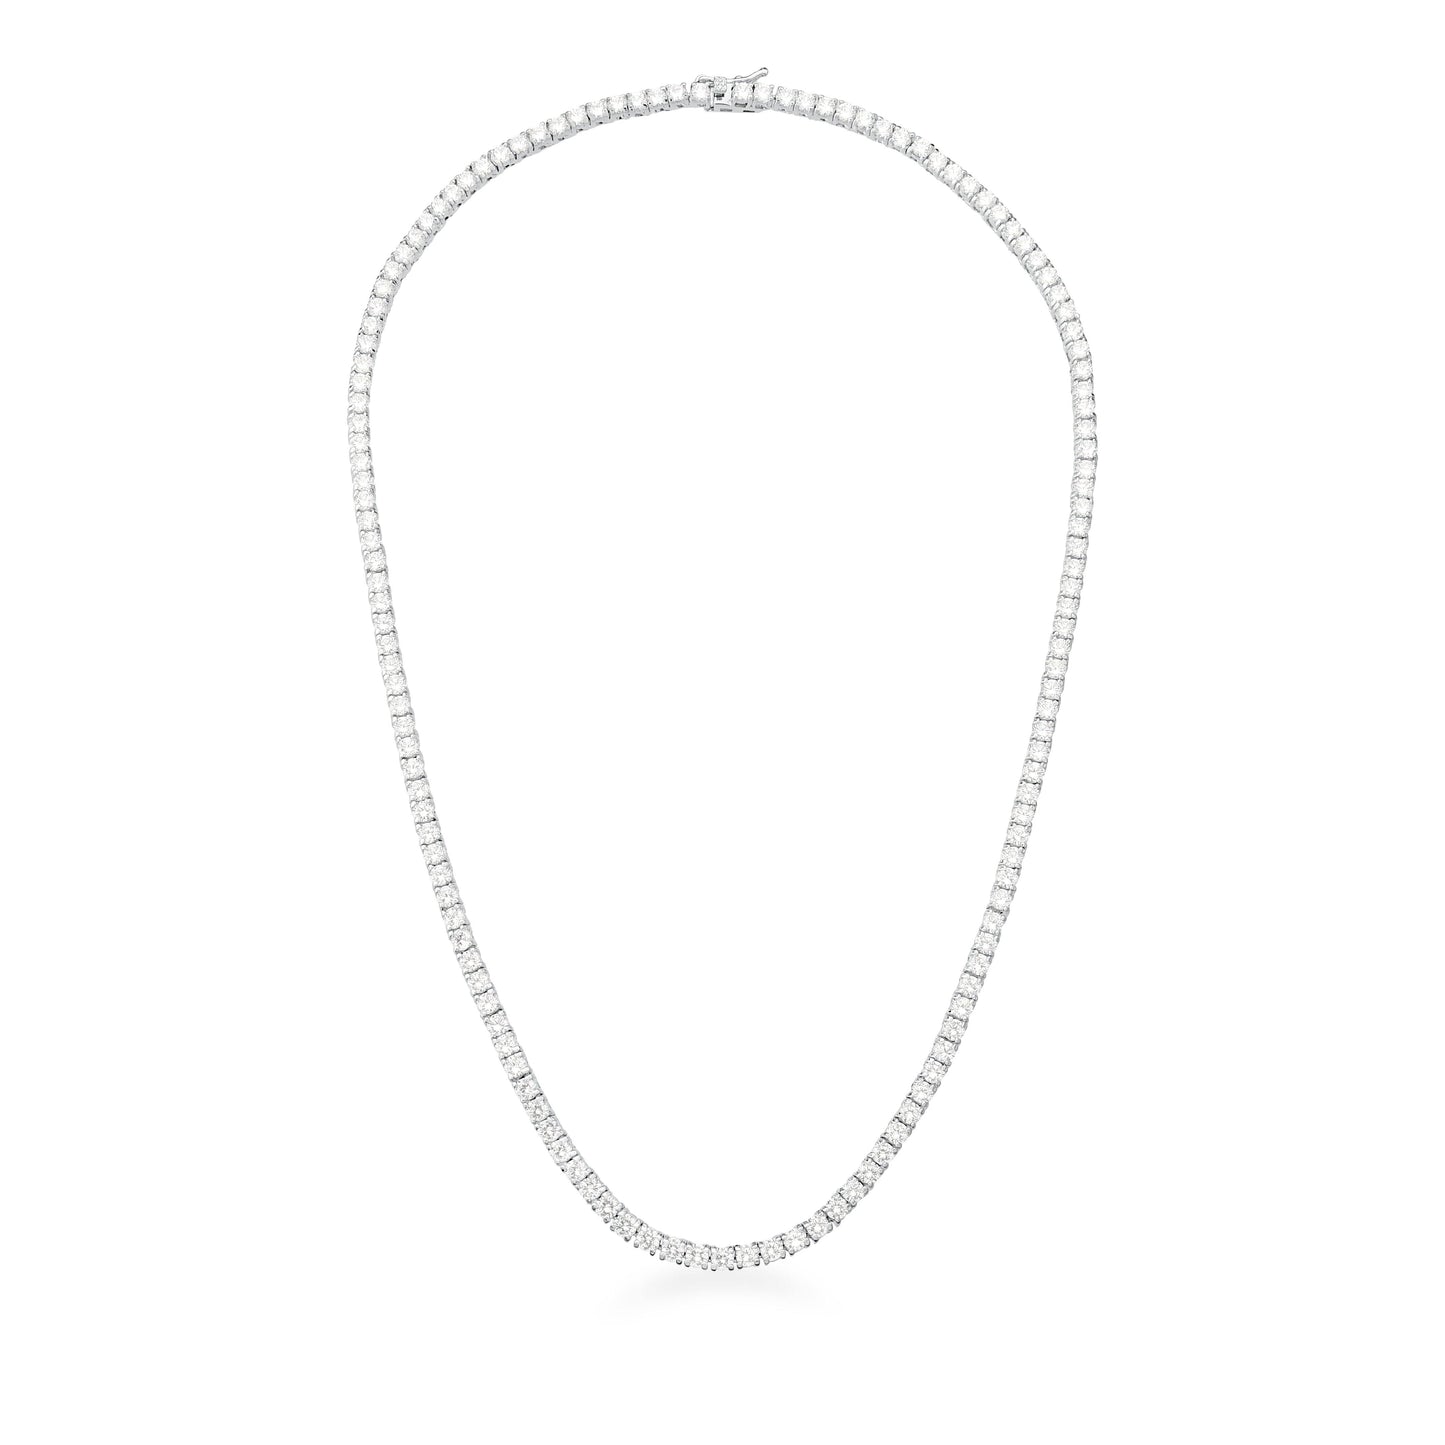 Corrente Riviera com Zircônias Brancas 45 cm - Citrine Concept Jewelry